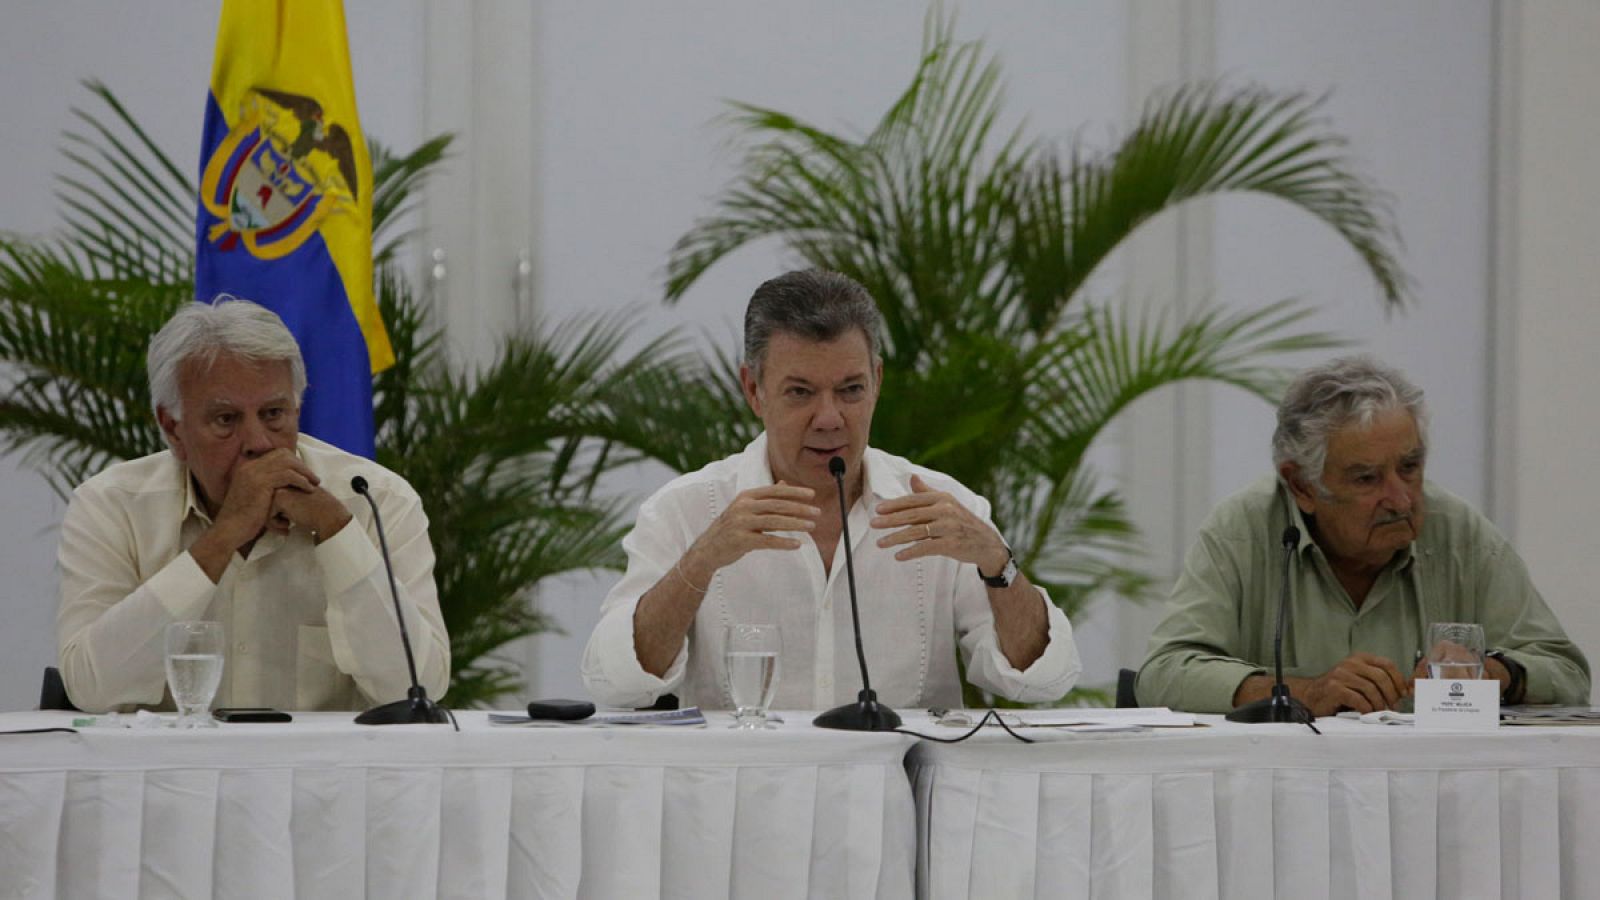 Santos asegura que implementar la paz no es fácil pero que superarán todos los obstáculos que se presenten